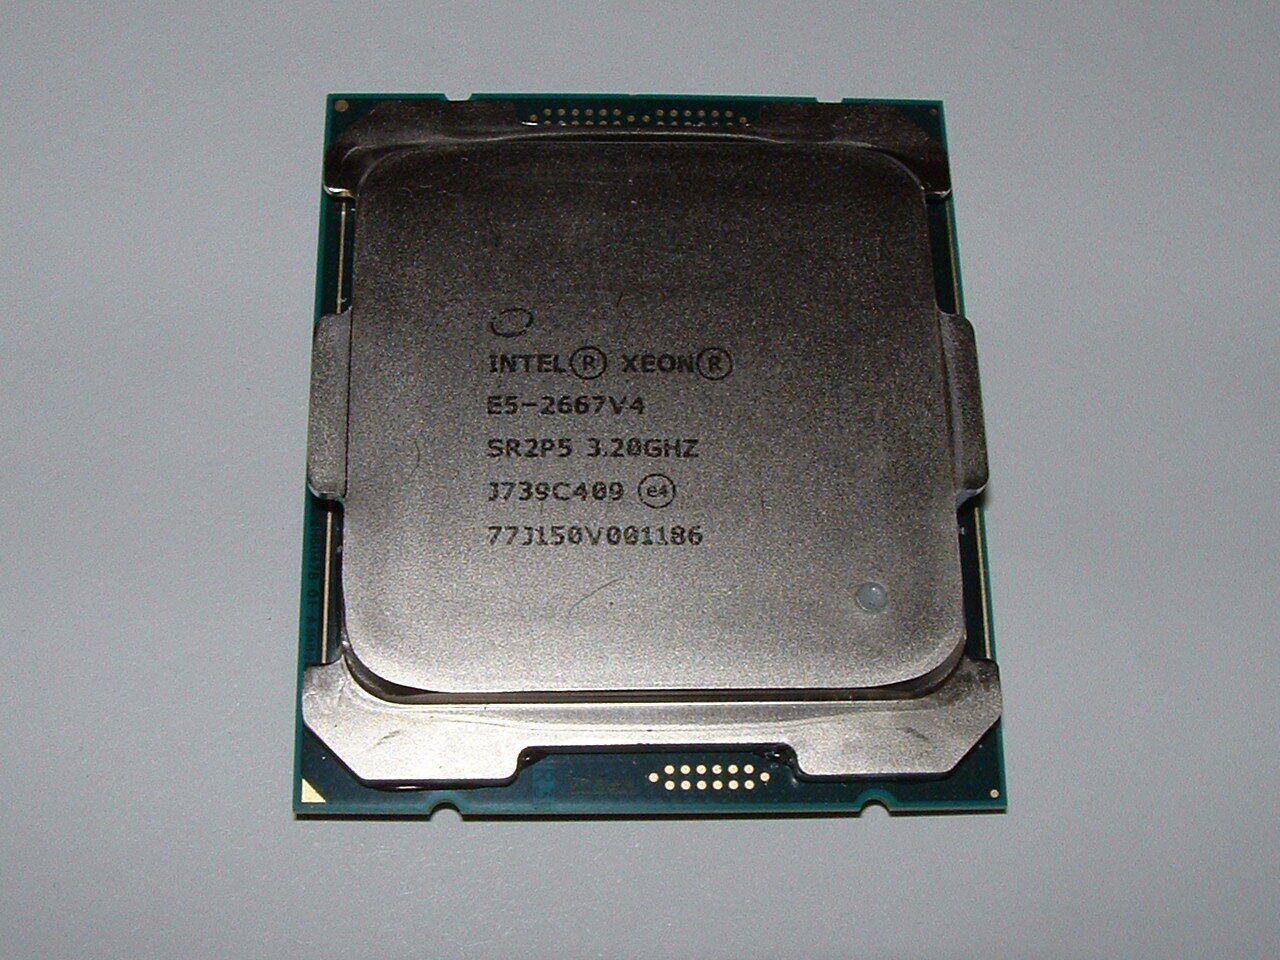 Intel Xeon E5-2667V4 SR2P5 (3.2GHZ/8-CORE/25MB/135W) PROCESSOR CPU